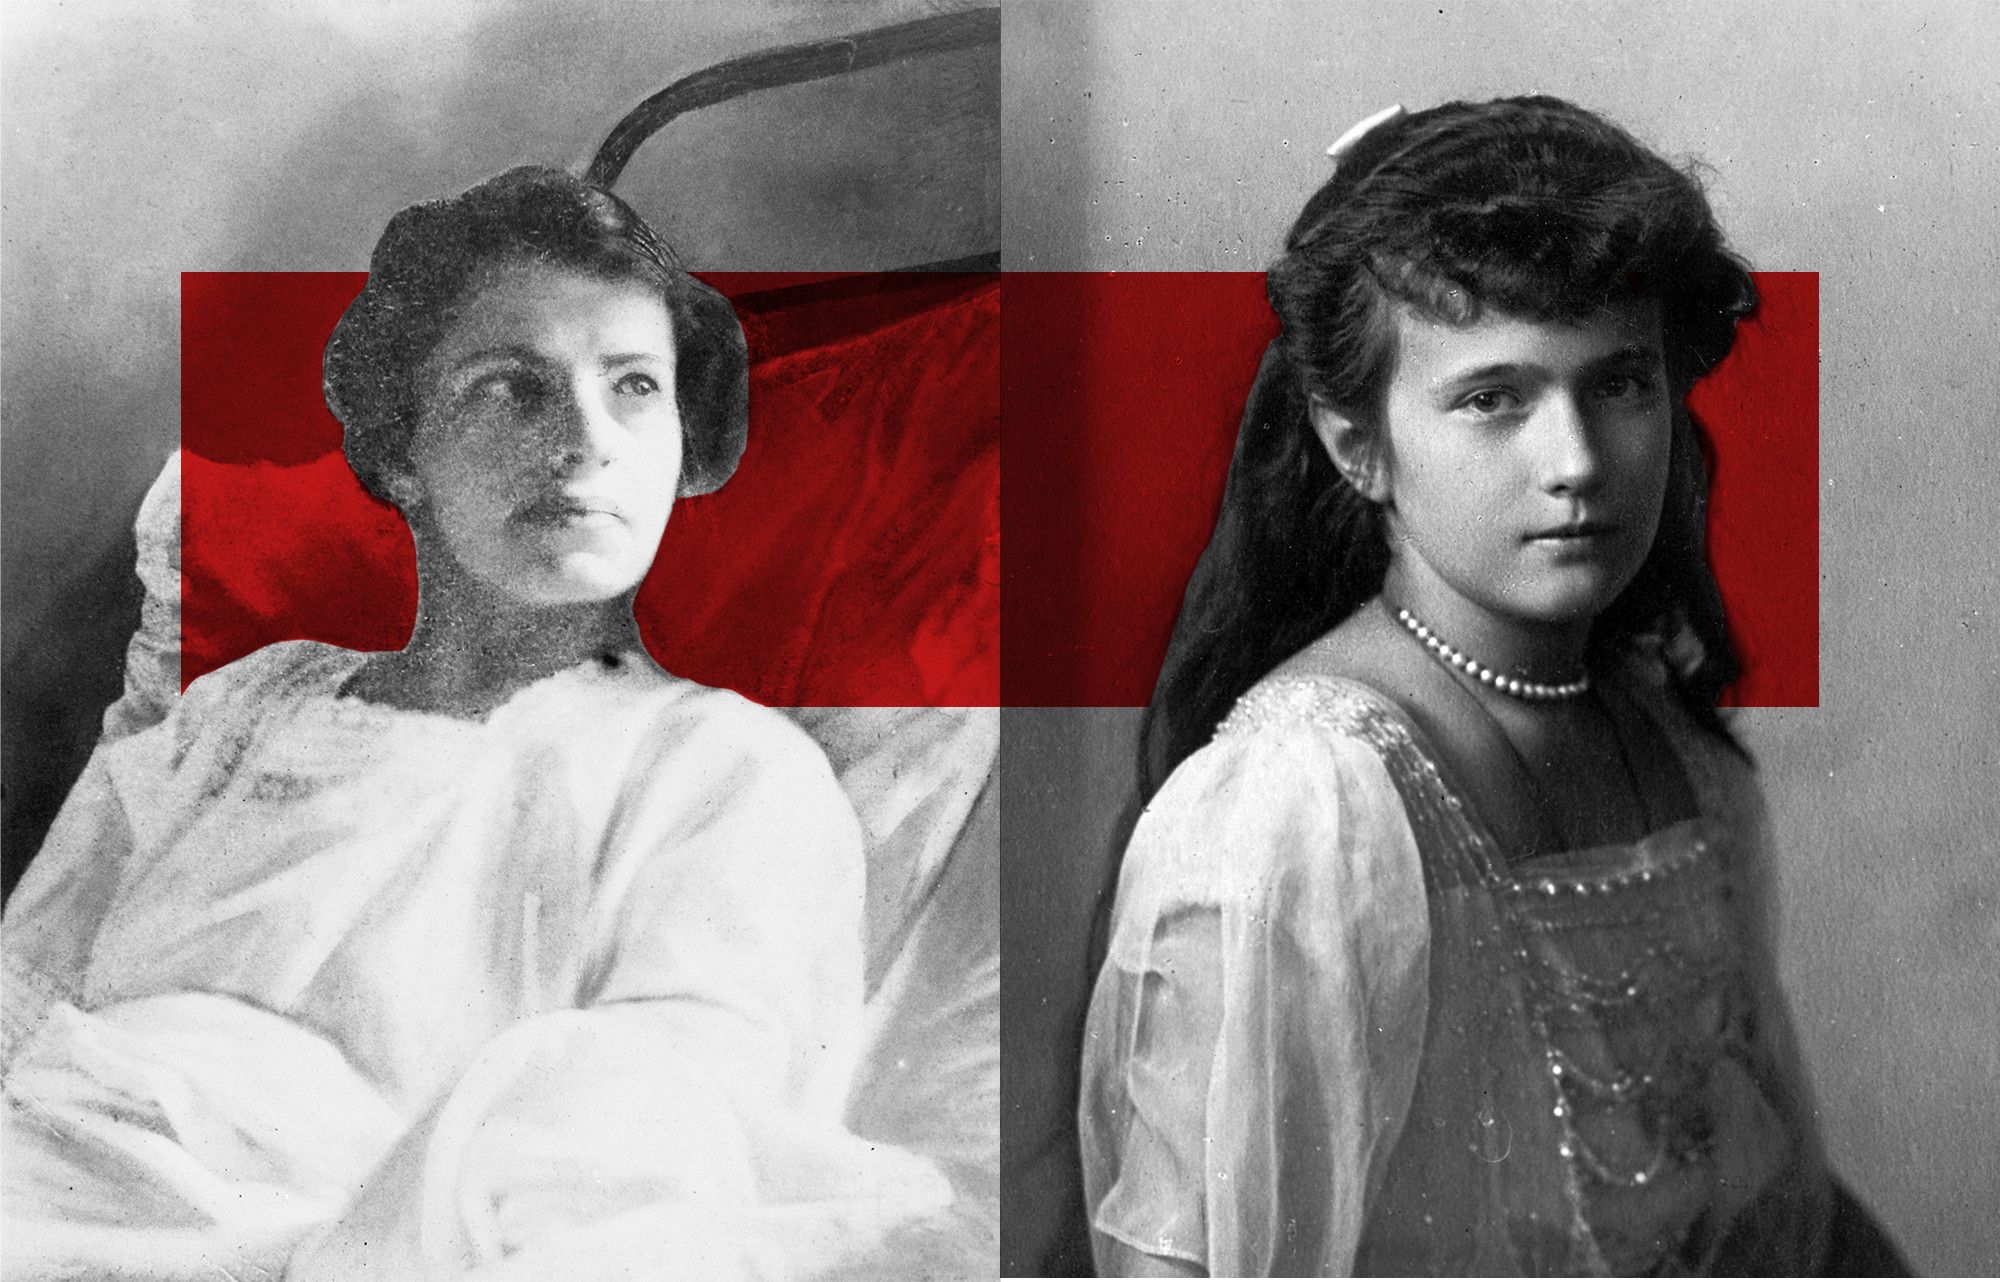 Anastasia Romanov Imposters - True Story About Princess Anastasia's Life